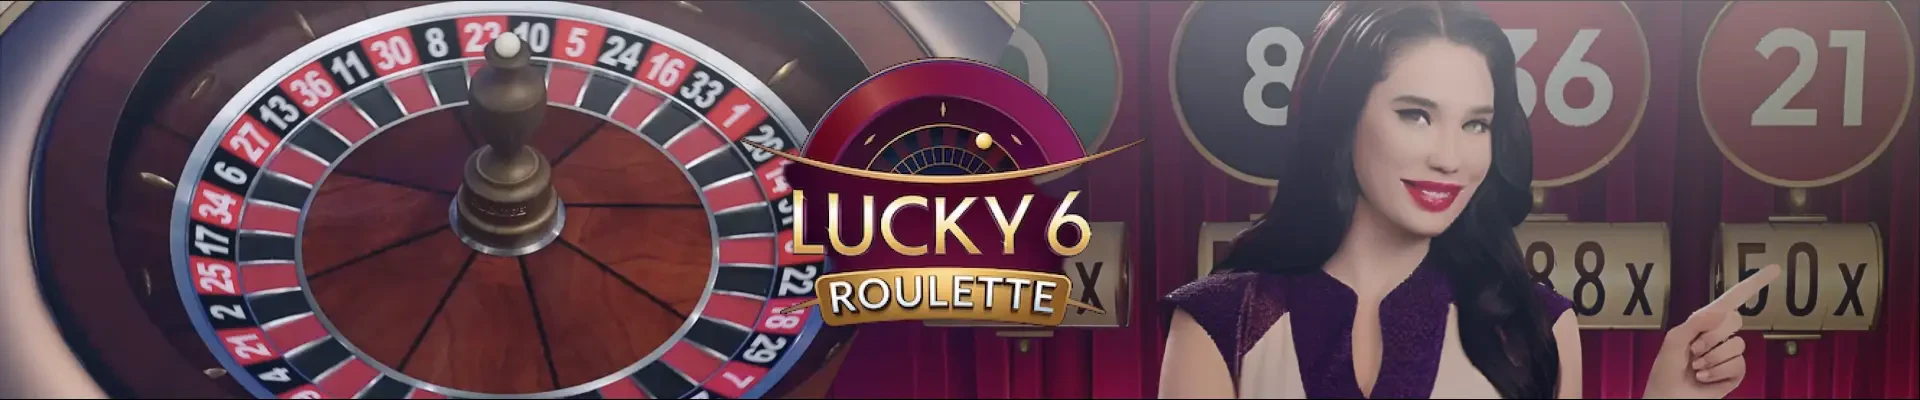 Lucky 6 Roulette header